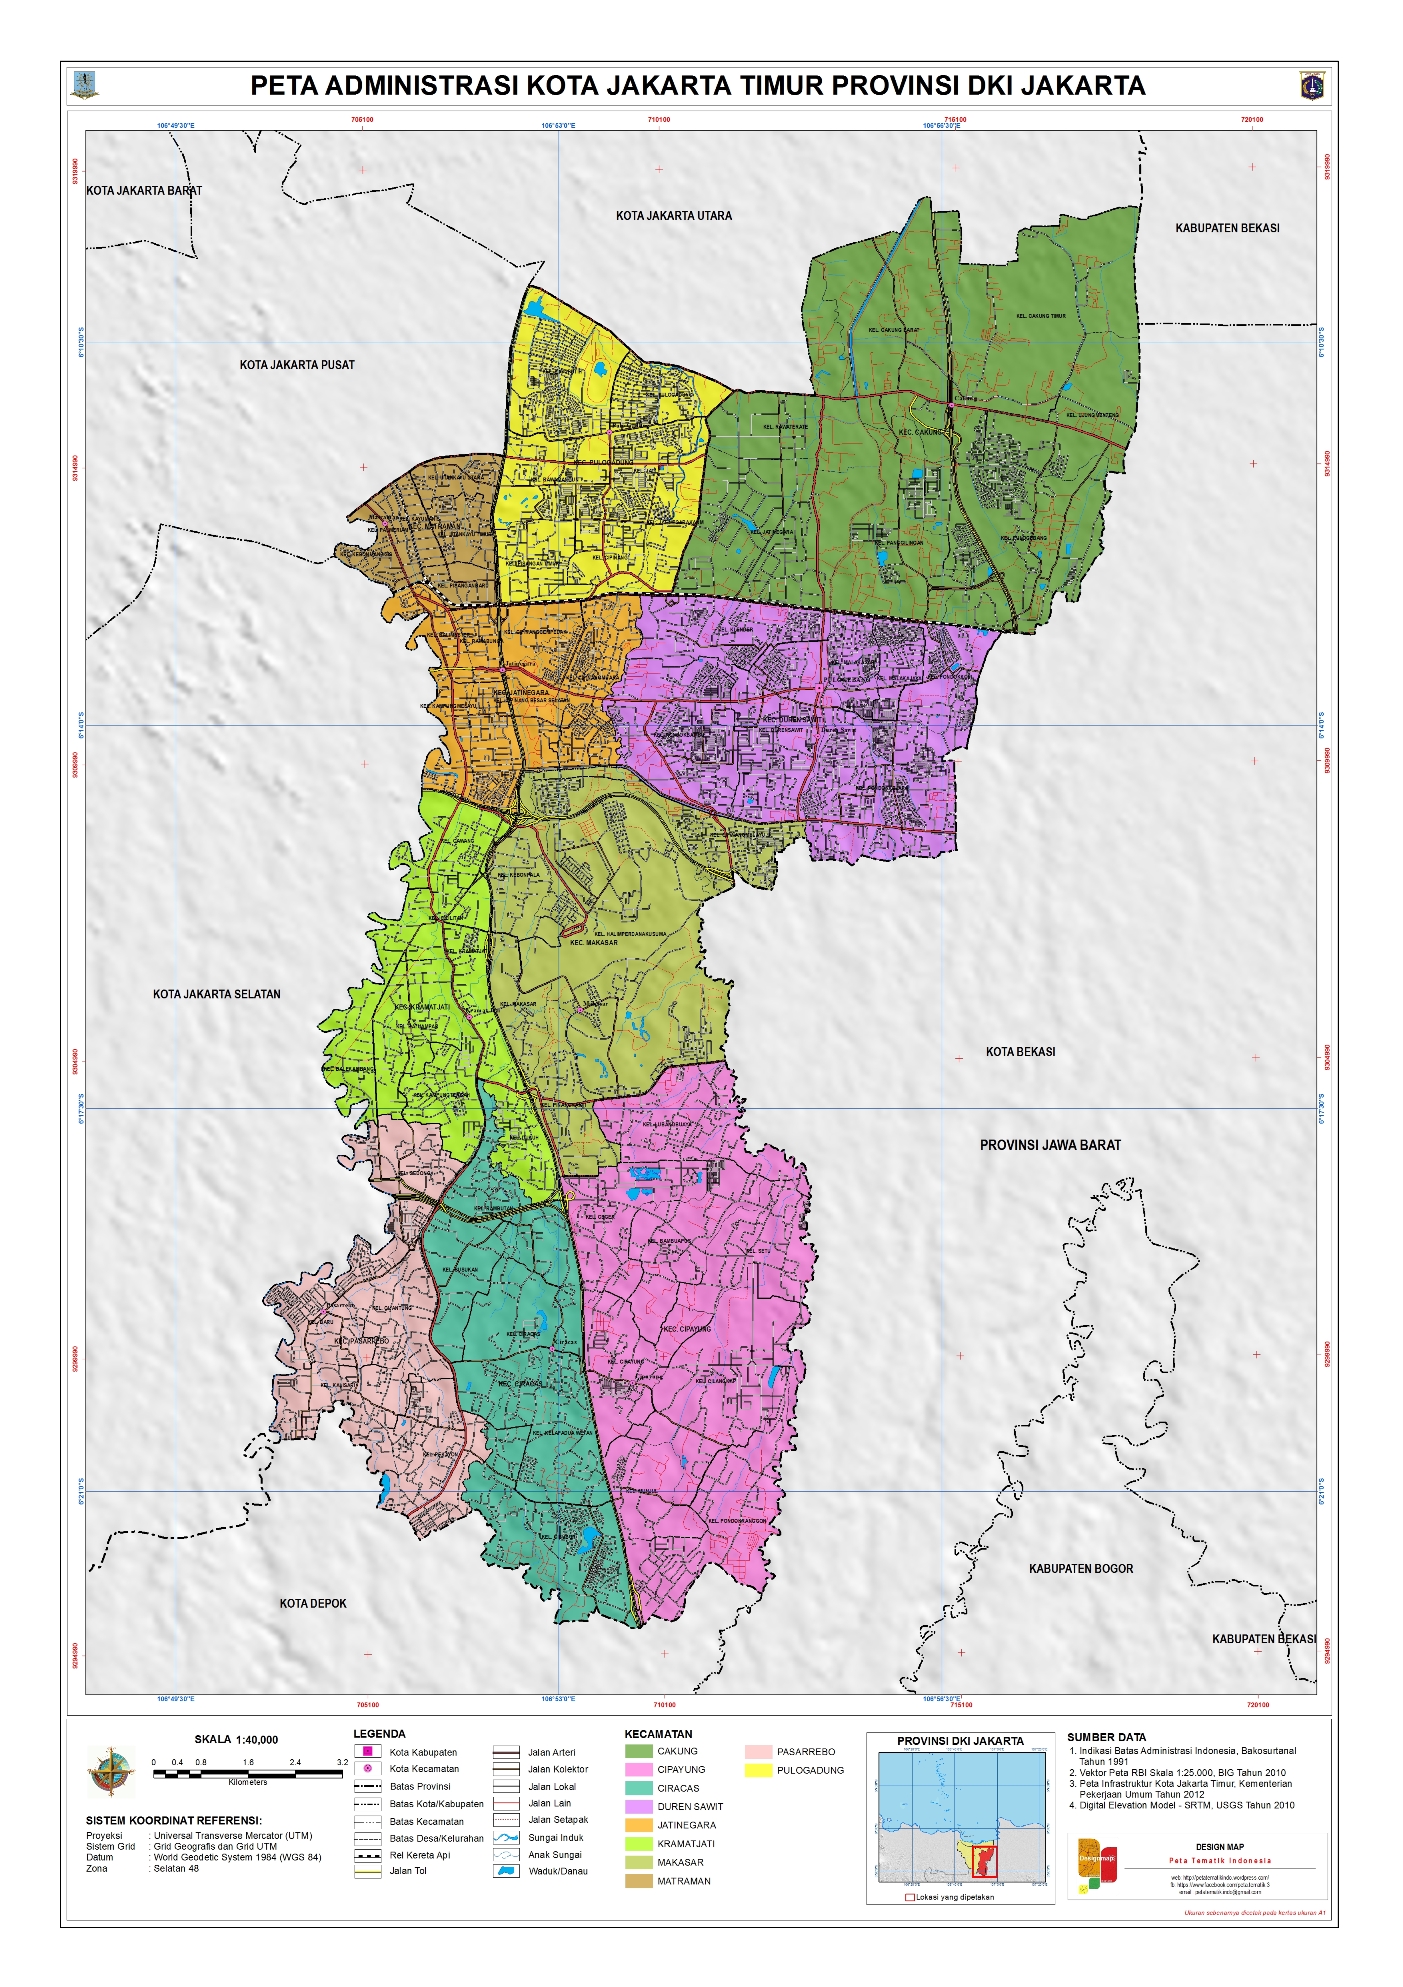 Gratis Download Peta Jakarta Timur  Lengkap womanlasopa